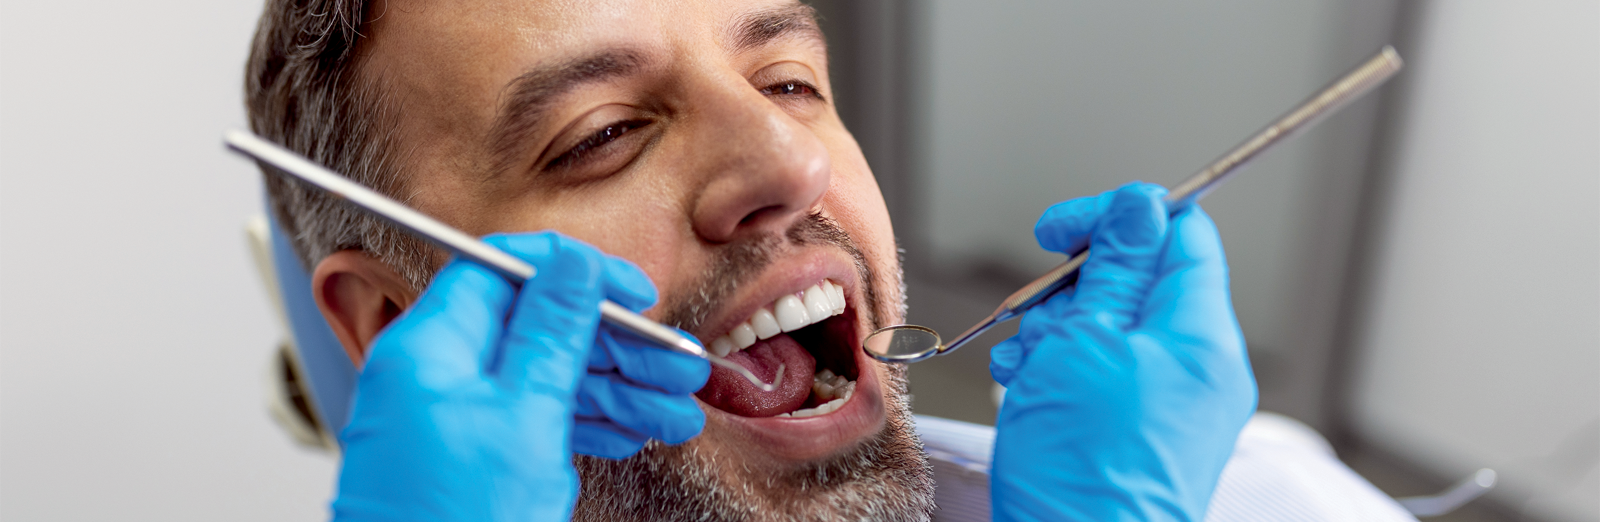 man-at-the-dentist-1600x522.png